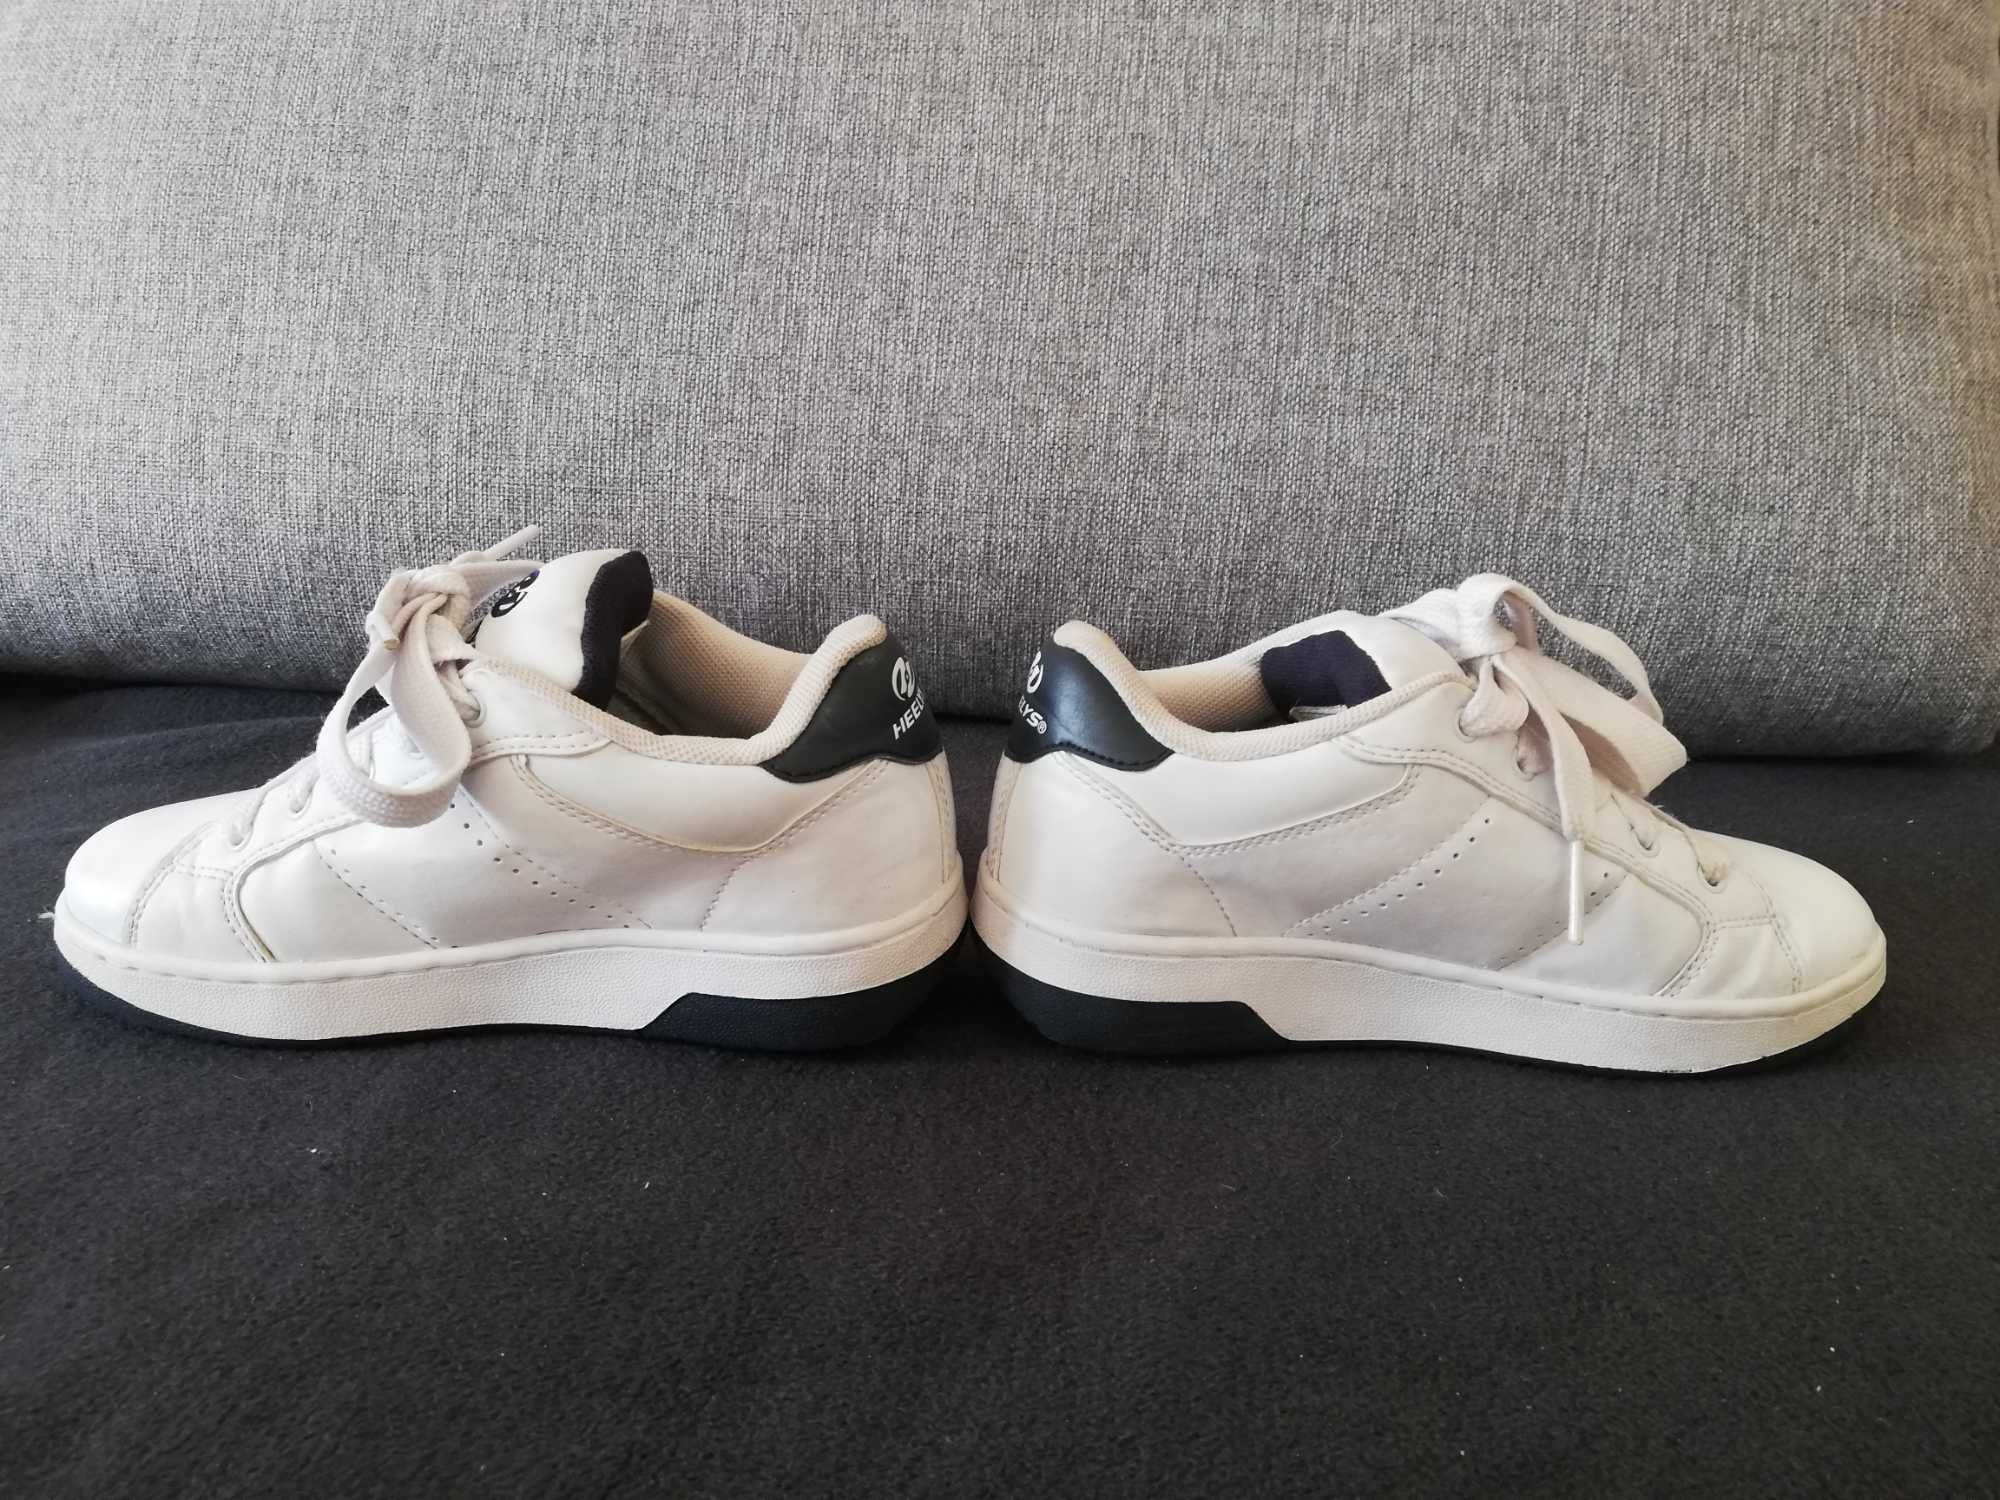 Buty Heelys buty na kółkach r. 36,5 wkł 23,5 cm